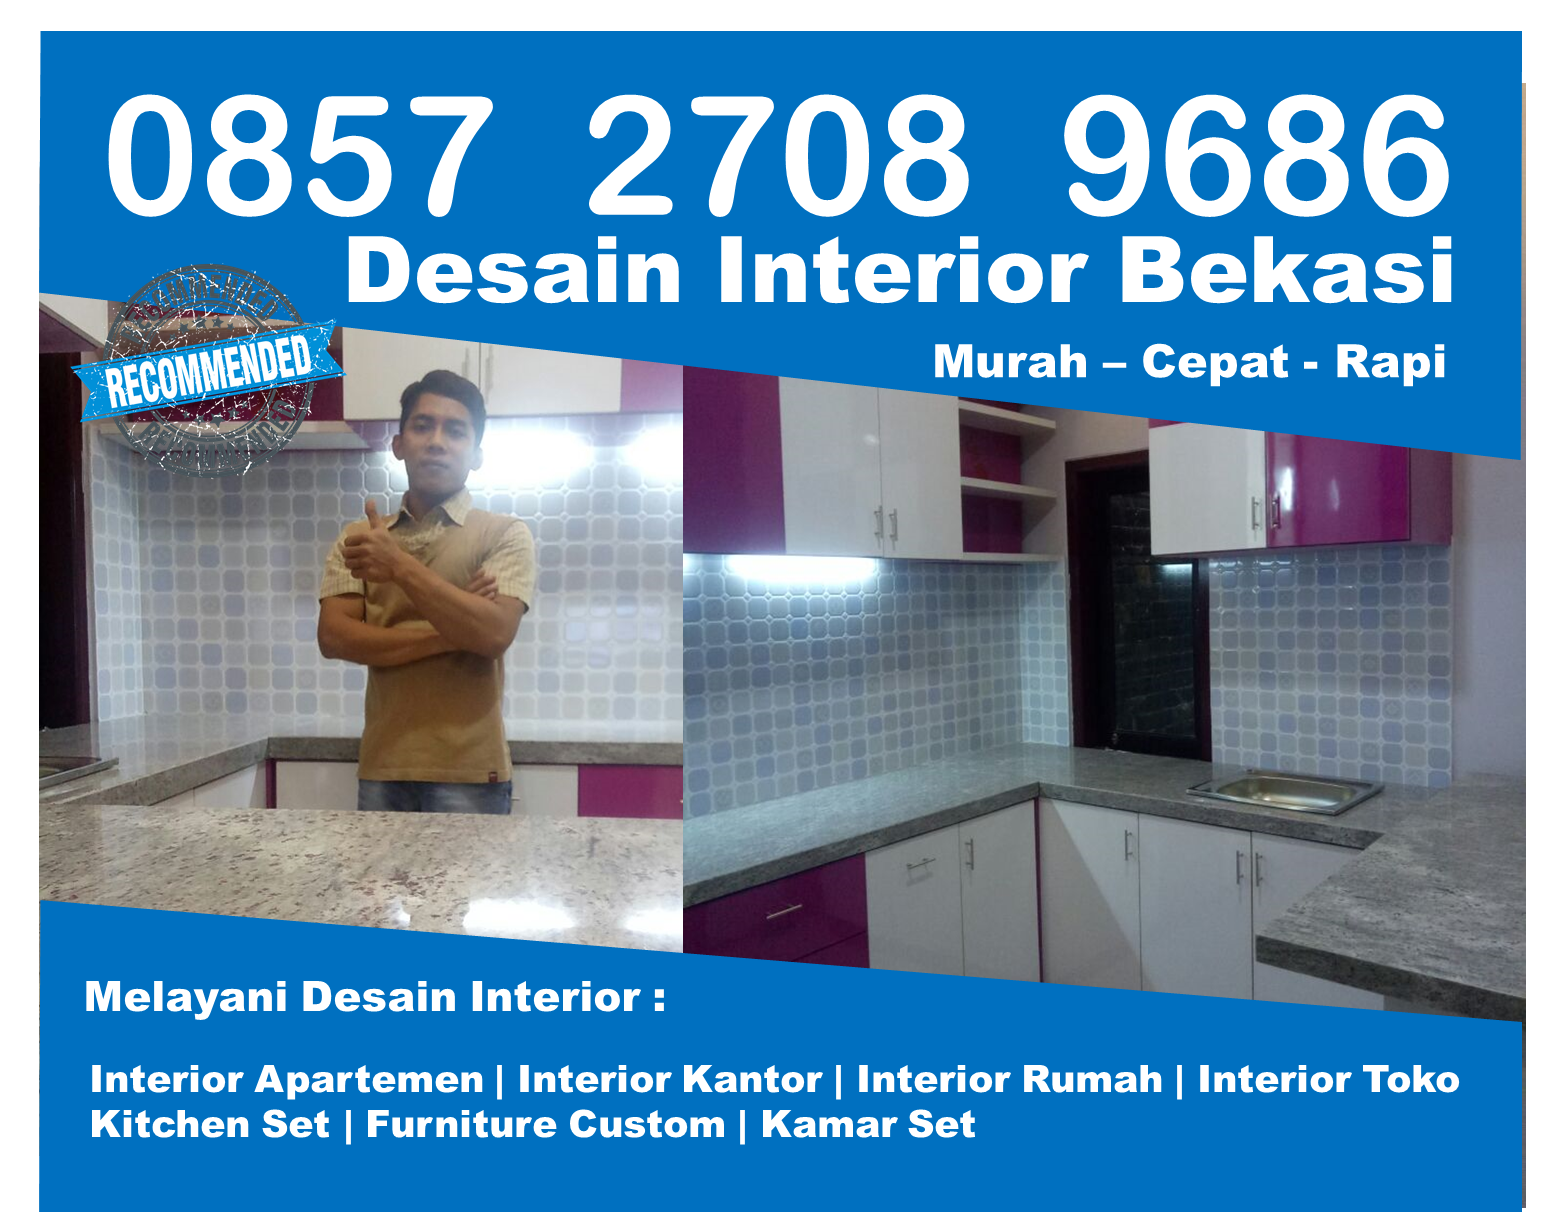 Telp 0857 2708 9686 Indosat Desain Interior Apartemen Harga